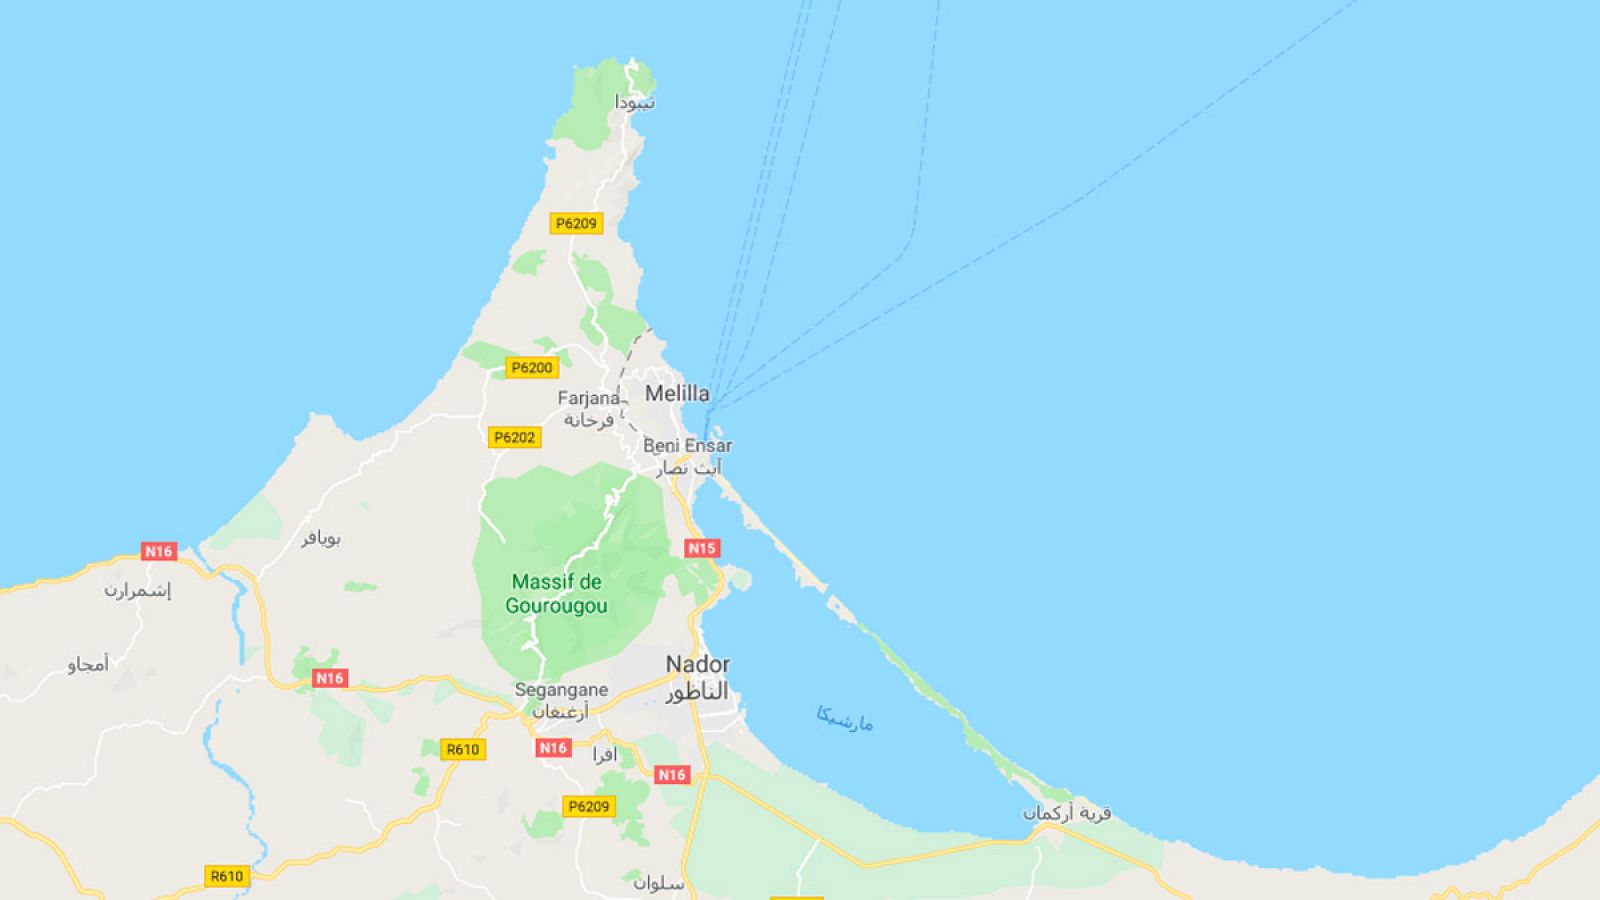 Mapa de la zona donde ha ocurrido el naufragio